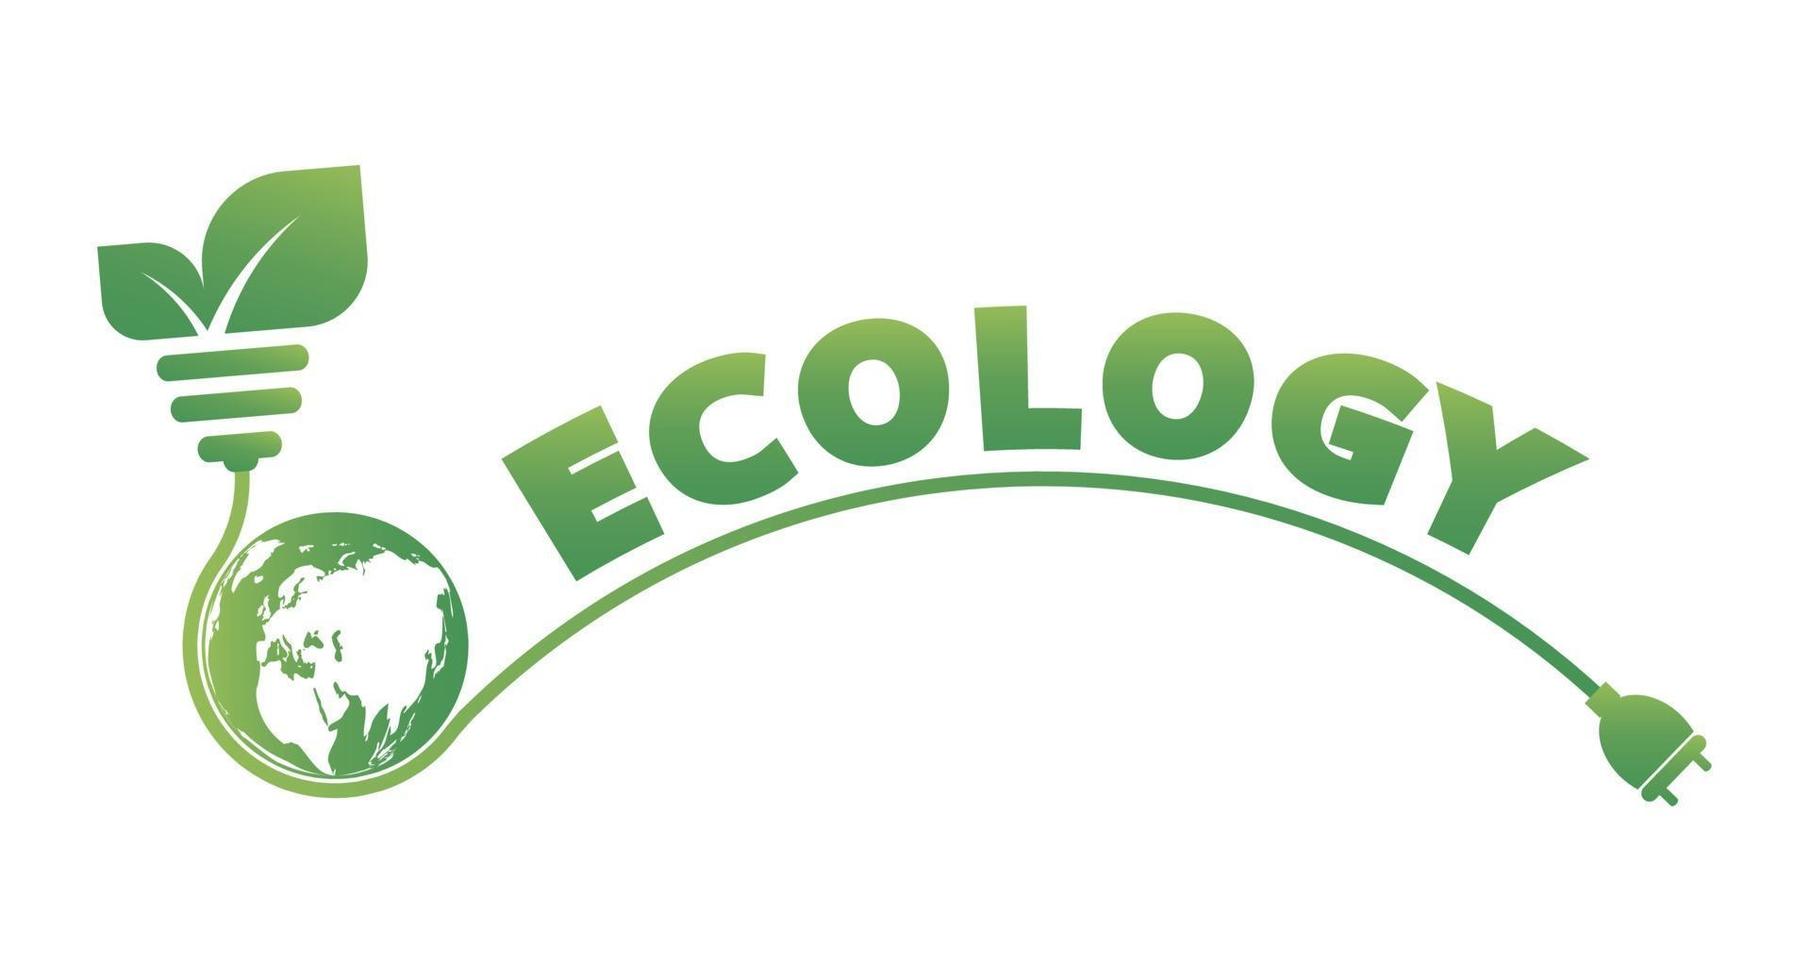 symbole de la terre avec des feuilles vertes autour de l'écologie des villes vertes aident le monde avec des idées de concept écologique vecteur